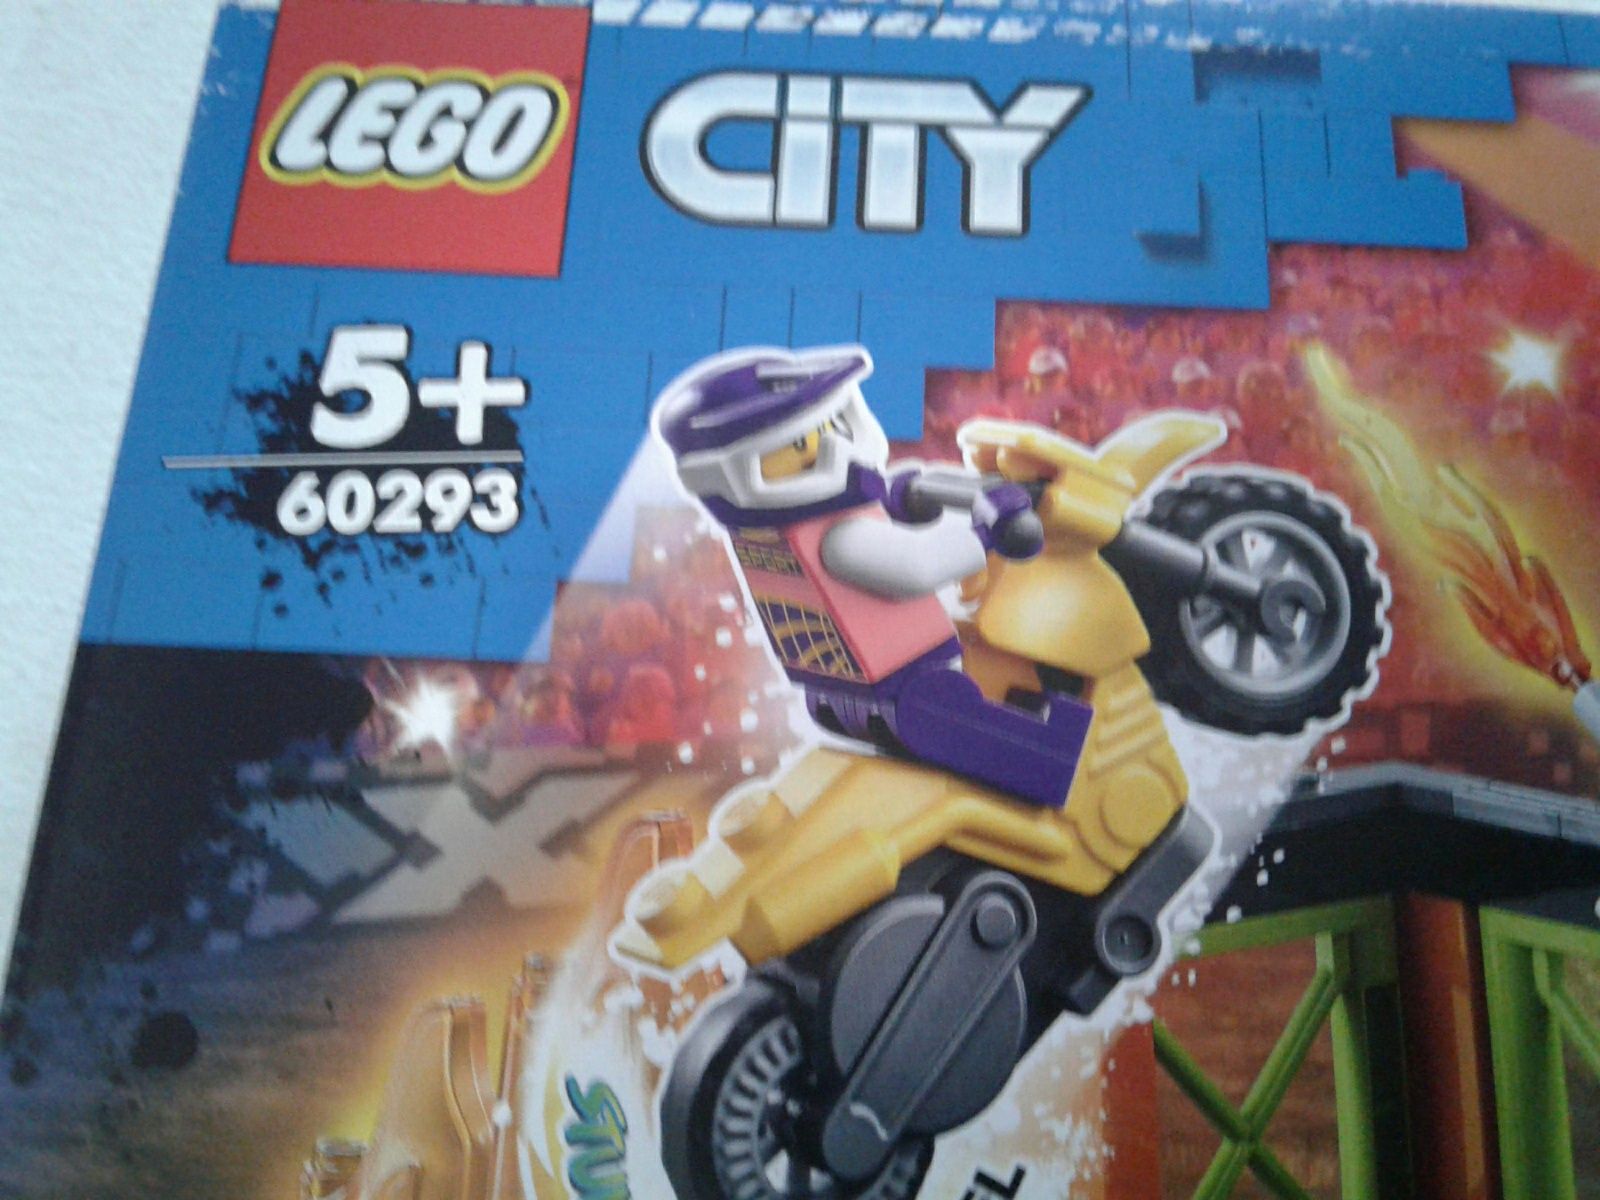 Parc de distractii si cascadorii Lego City 60293, nou, sigilat, rec.5+